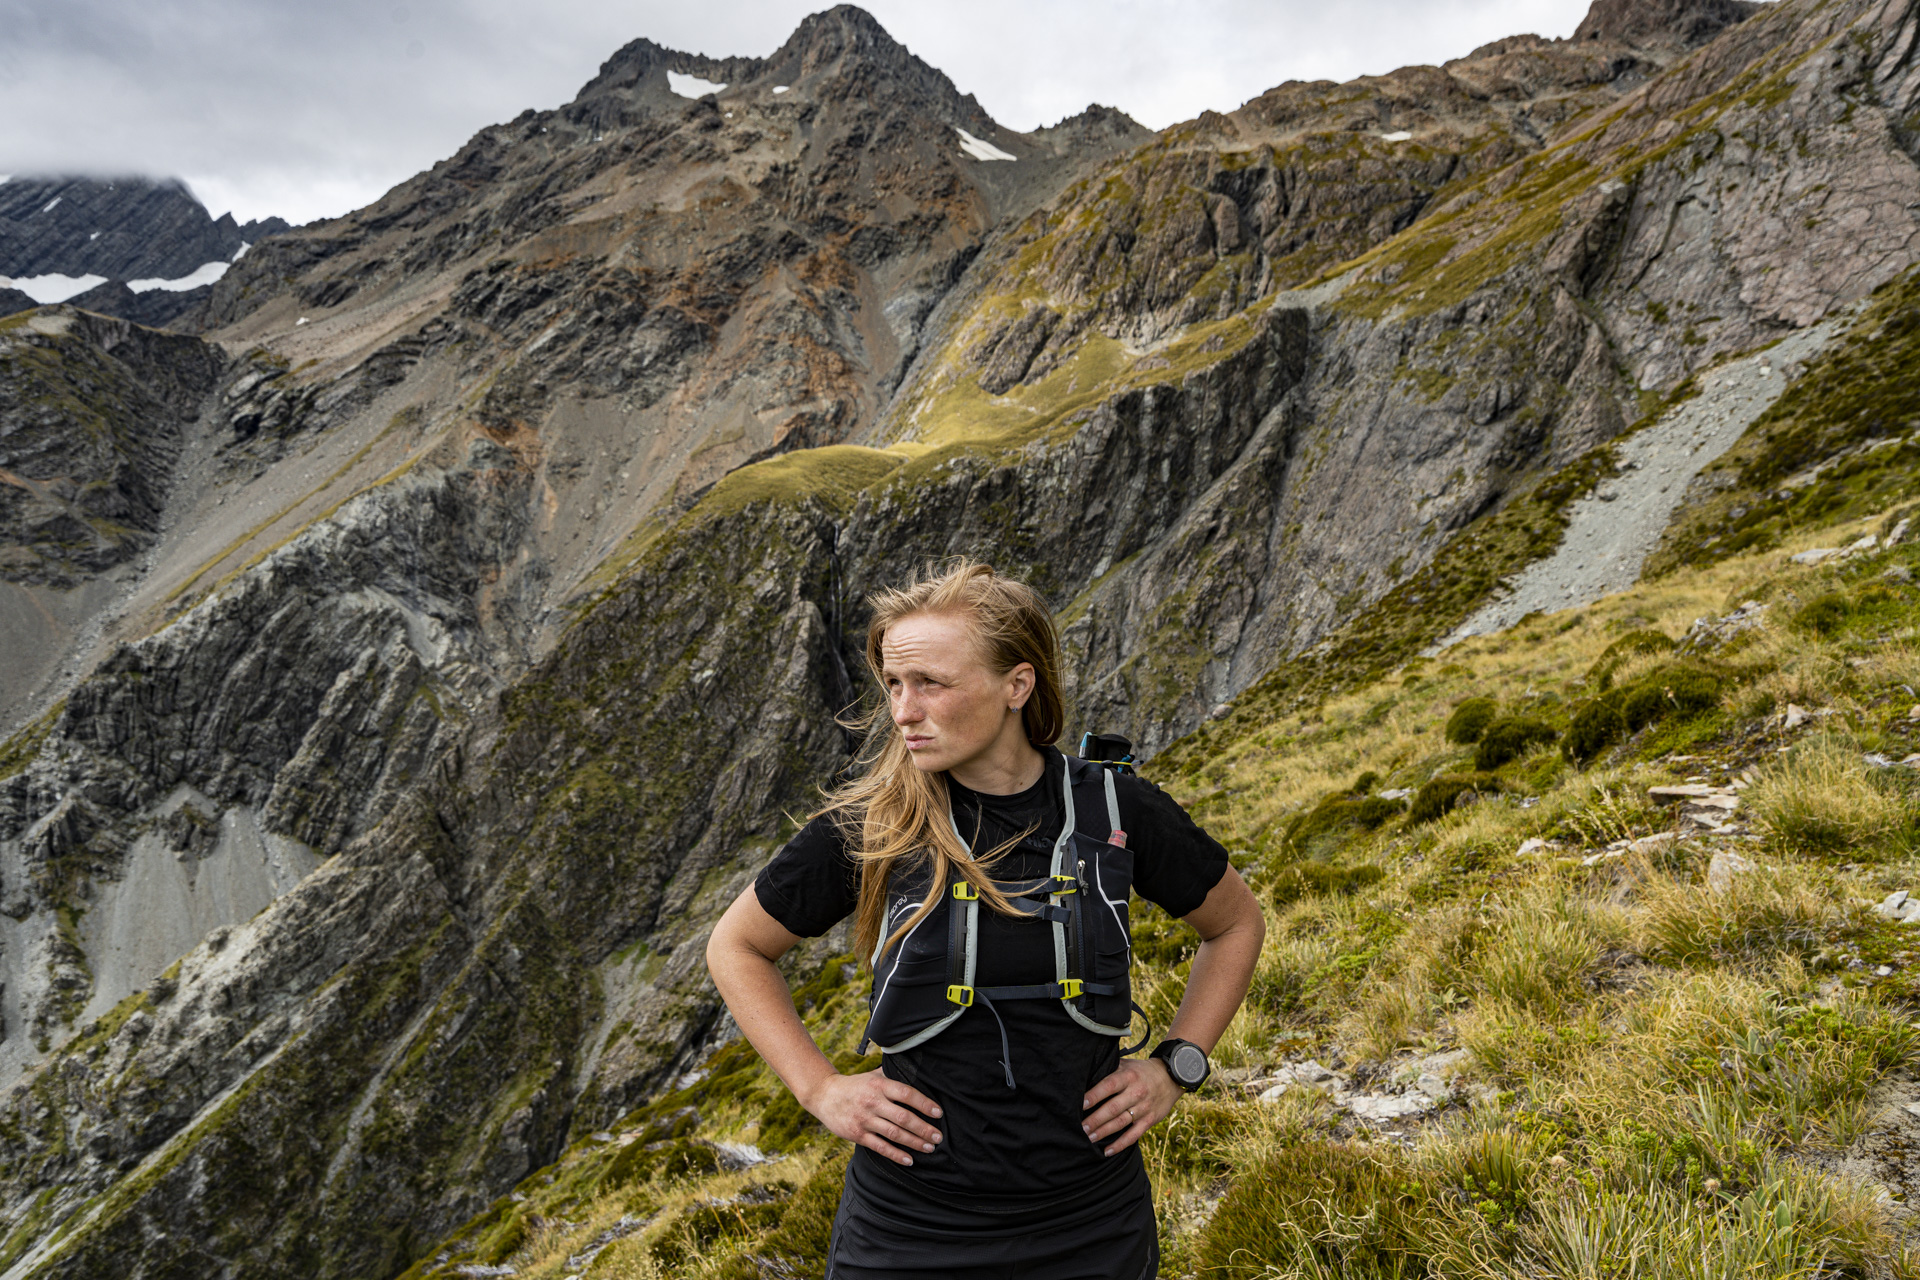 Peggy Marvanová, Lapierre, Nový Zéland a Mistrovství světa v adventure racingu